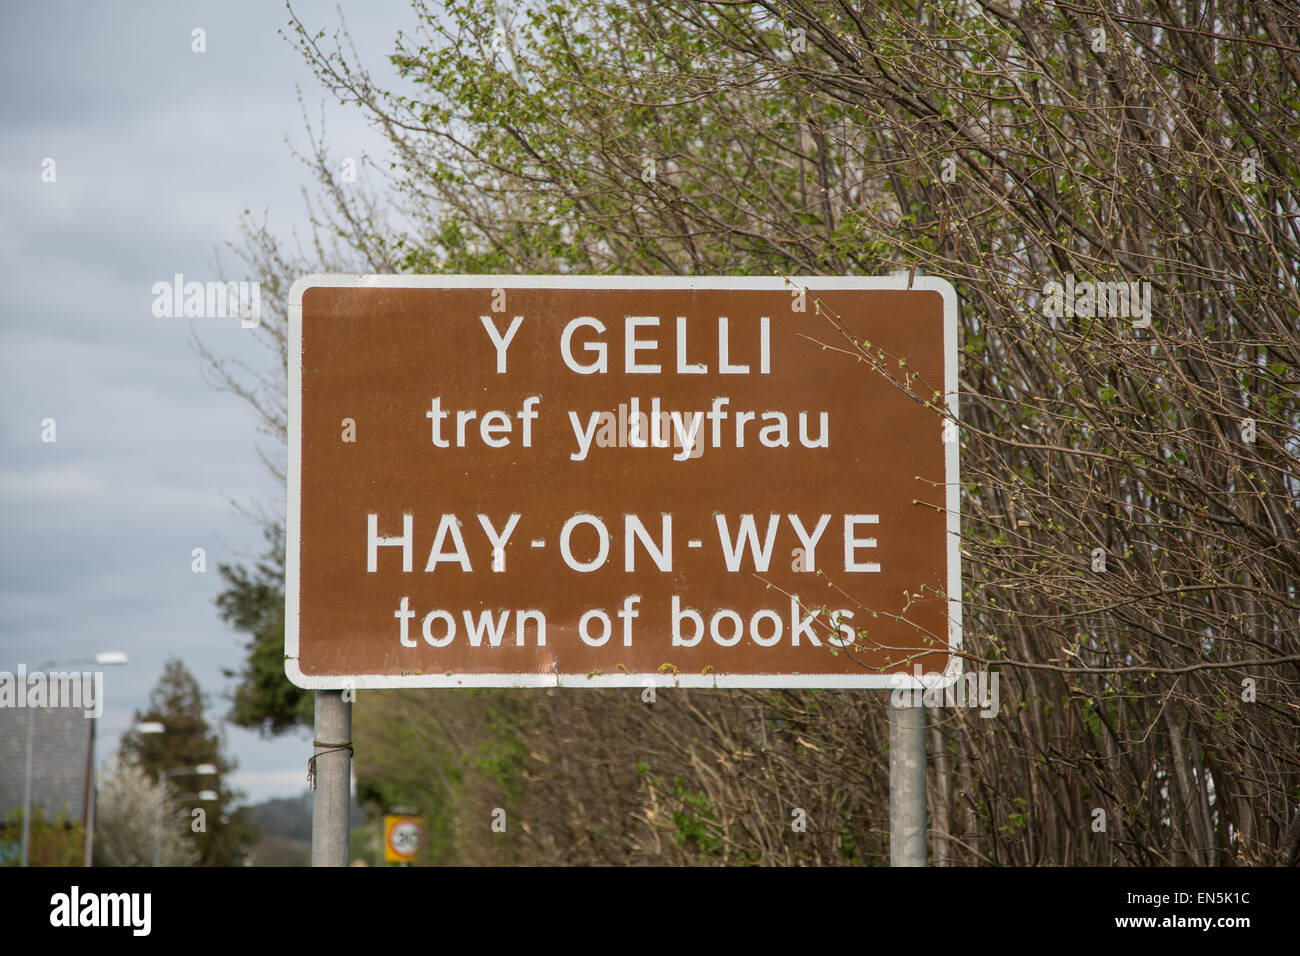 Y Gelli, tref y llyfrau: Hay-on-Wye town of books roadsign Stock Photo